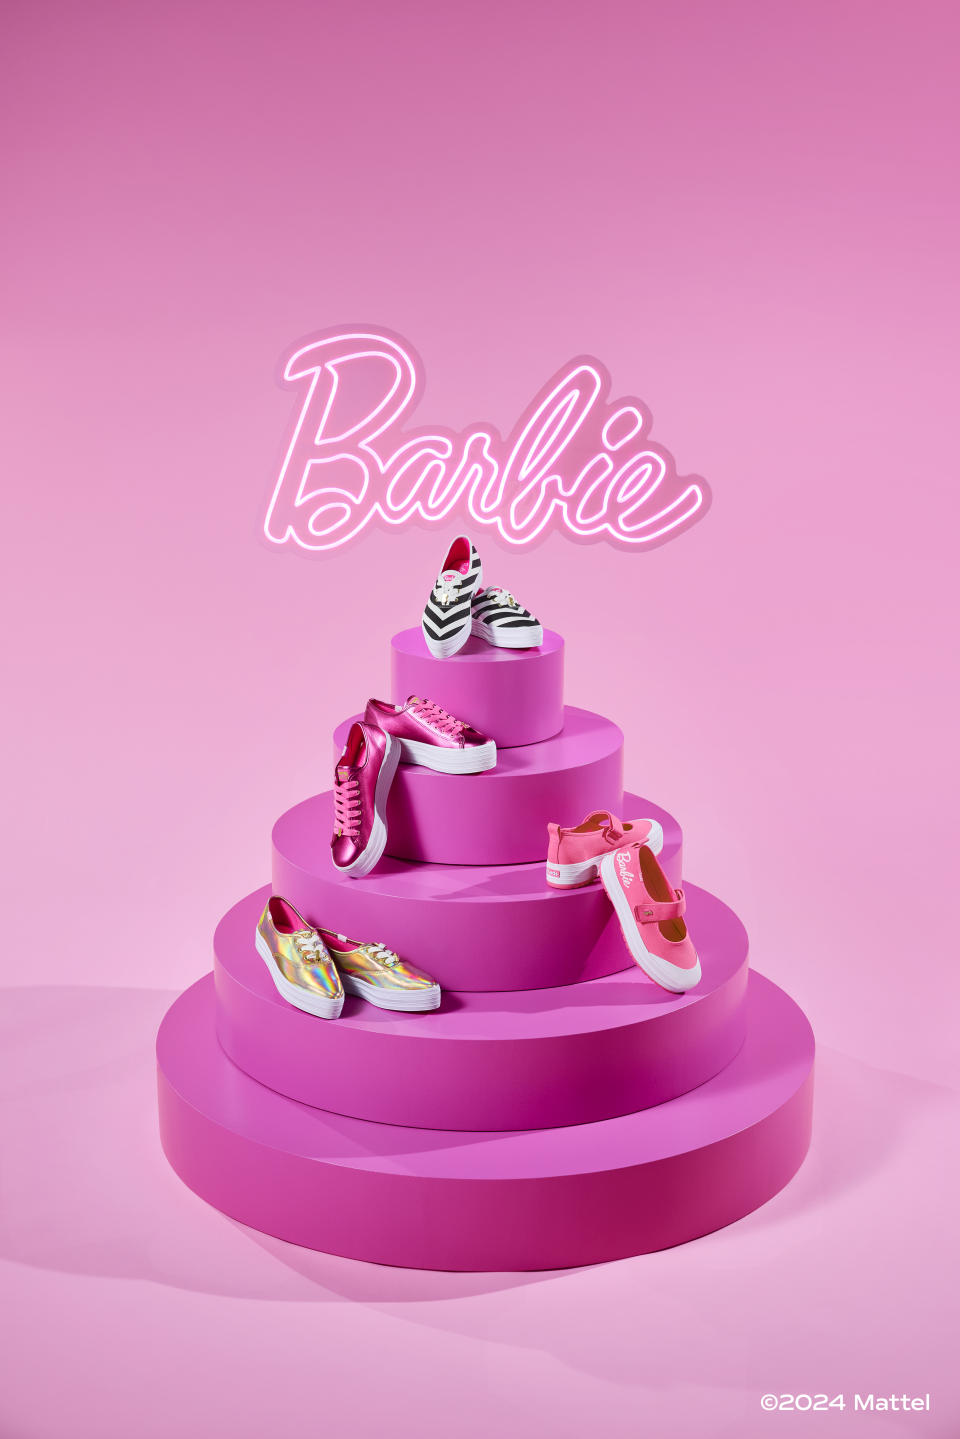 Keds, Barbie, collaboration, shoes